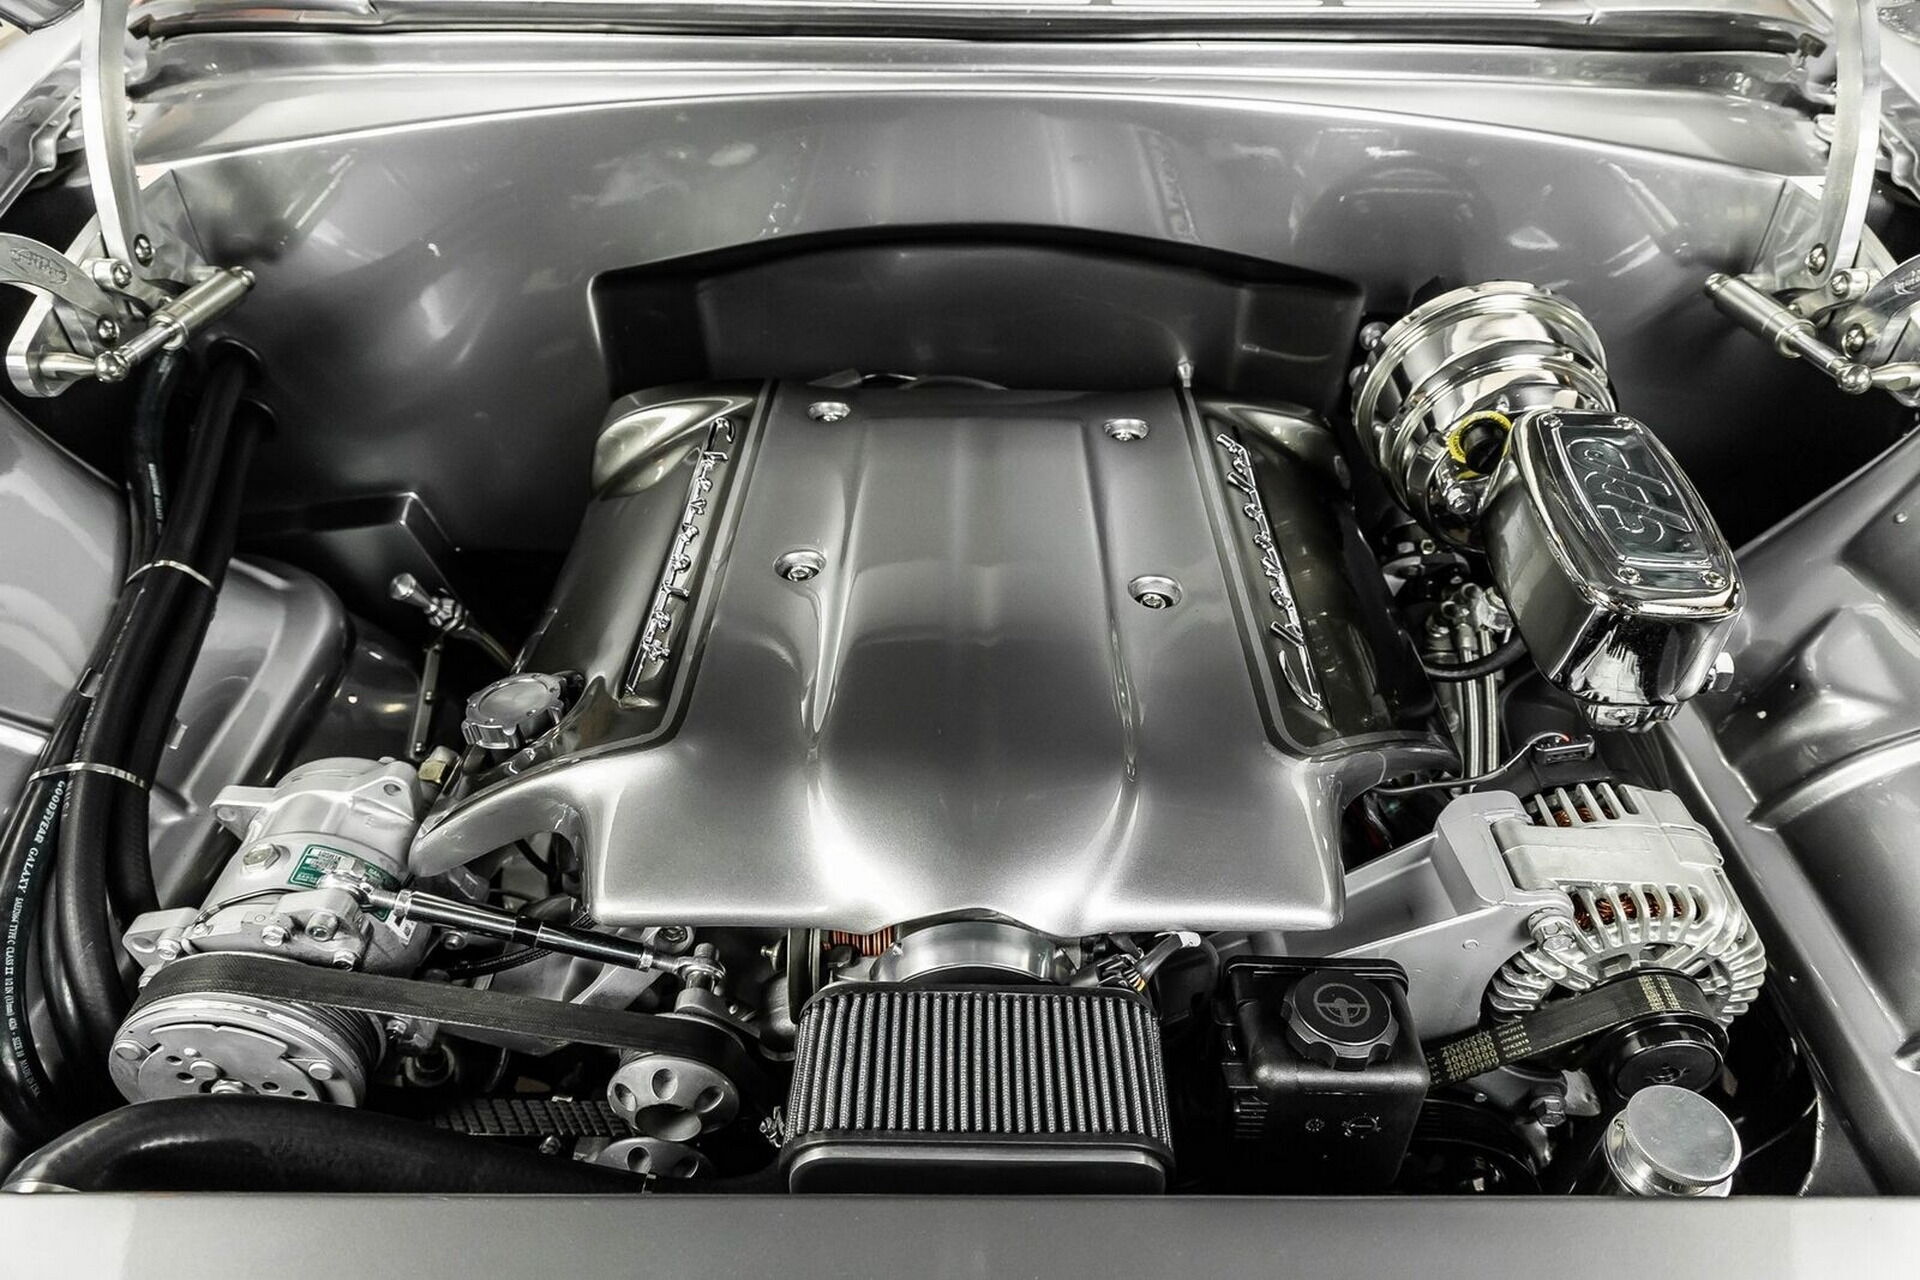 Під капотом знаходиться 5,7-літровий мотор LS1 V8 від General Motors потужністю 350 к.с.